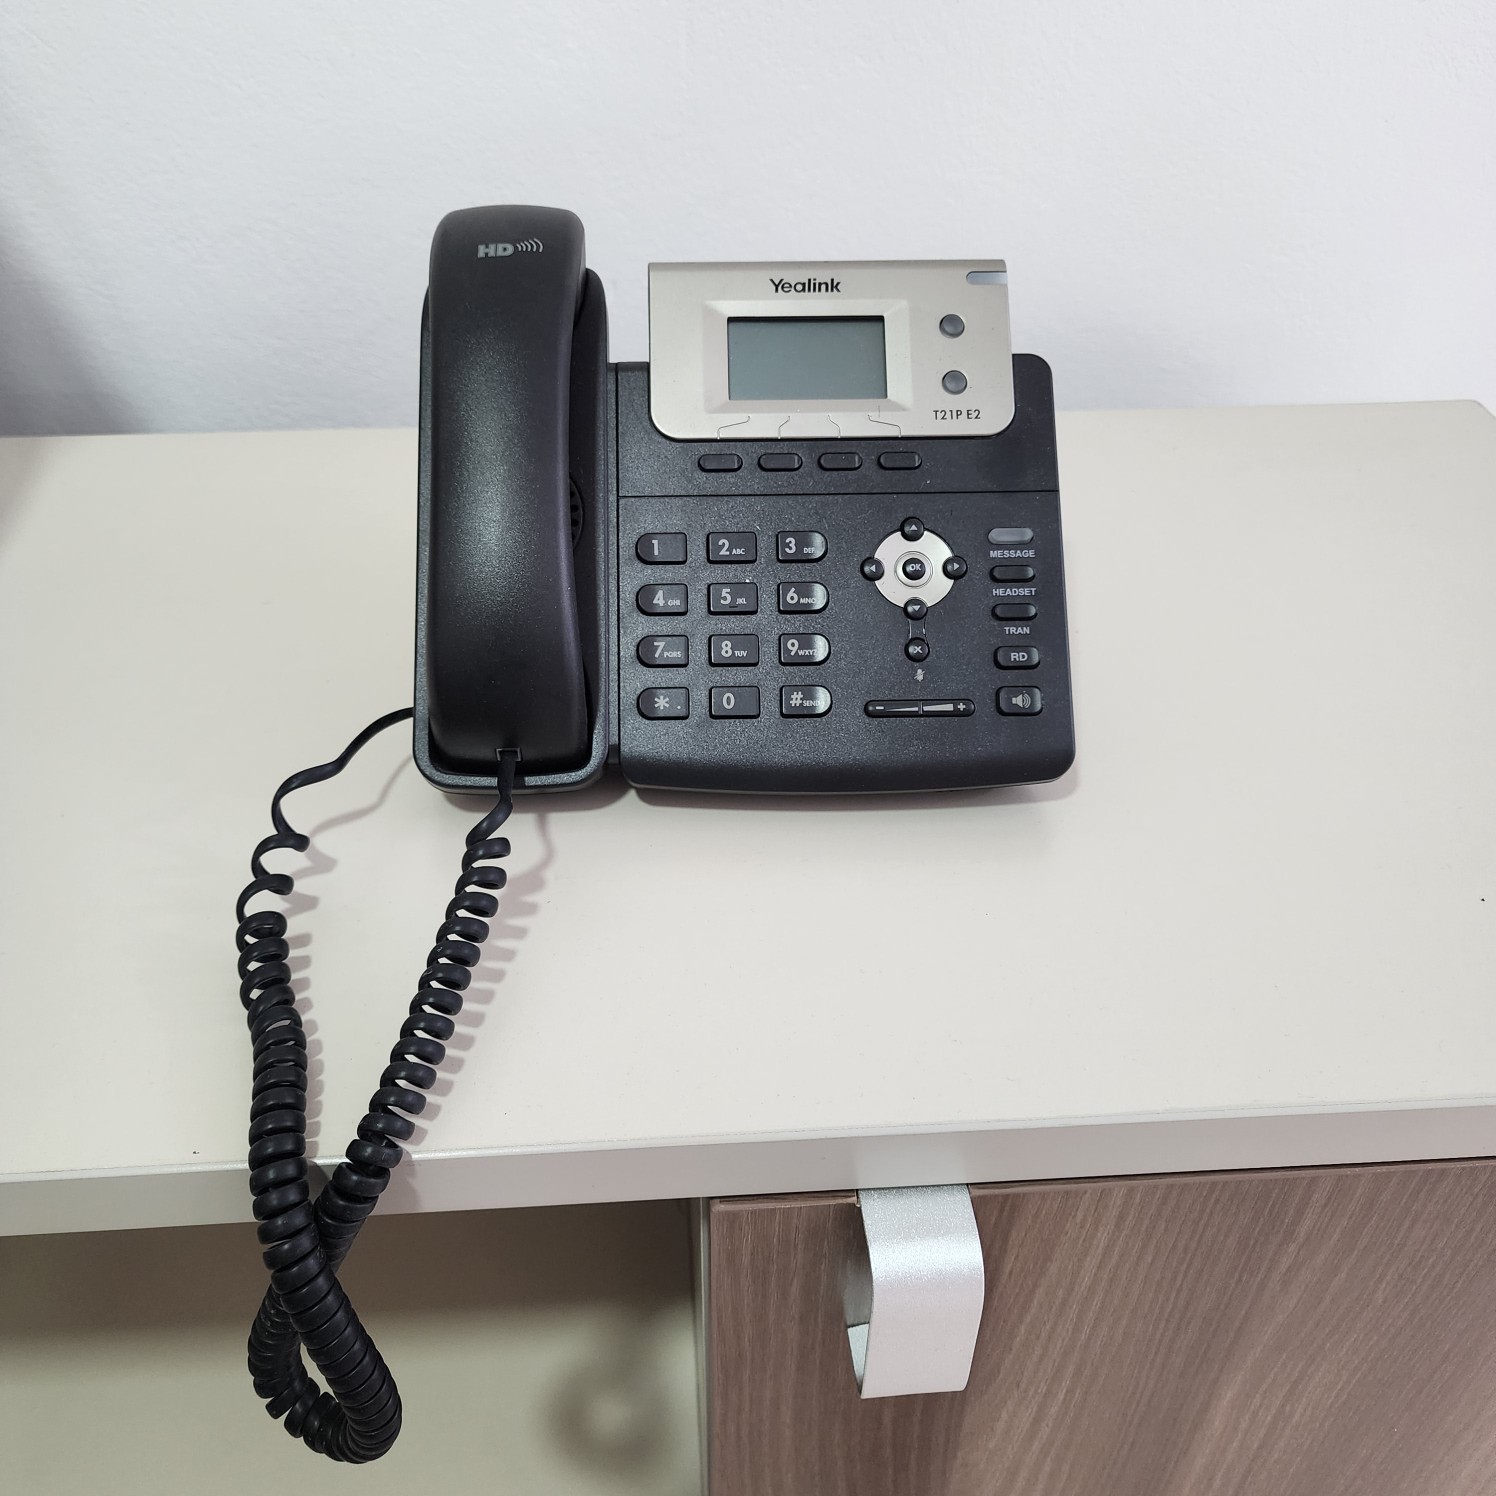 equipos profesionales - Teléfono Yealink, dual line, poquísimo uso, perfecto para oficinas